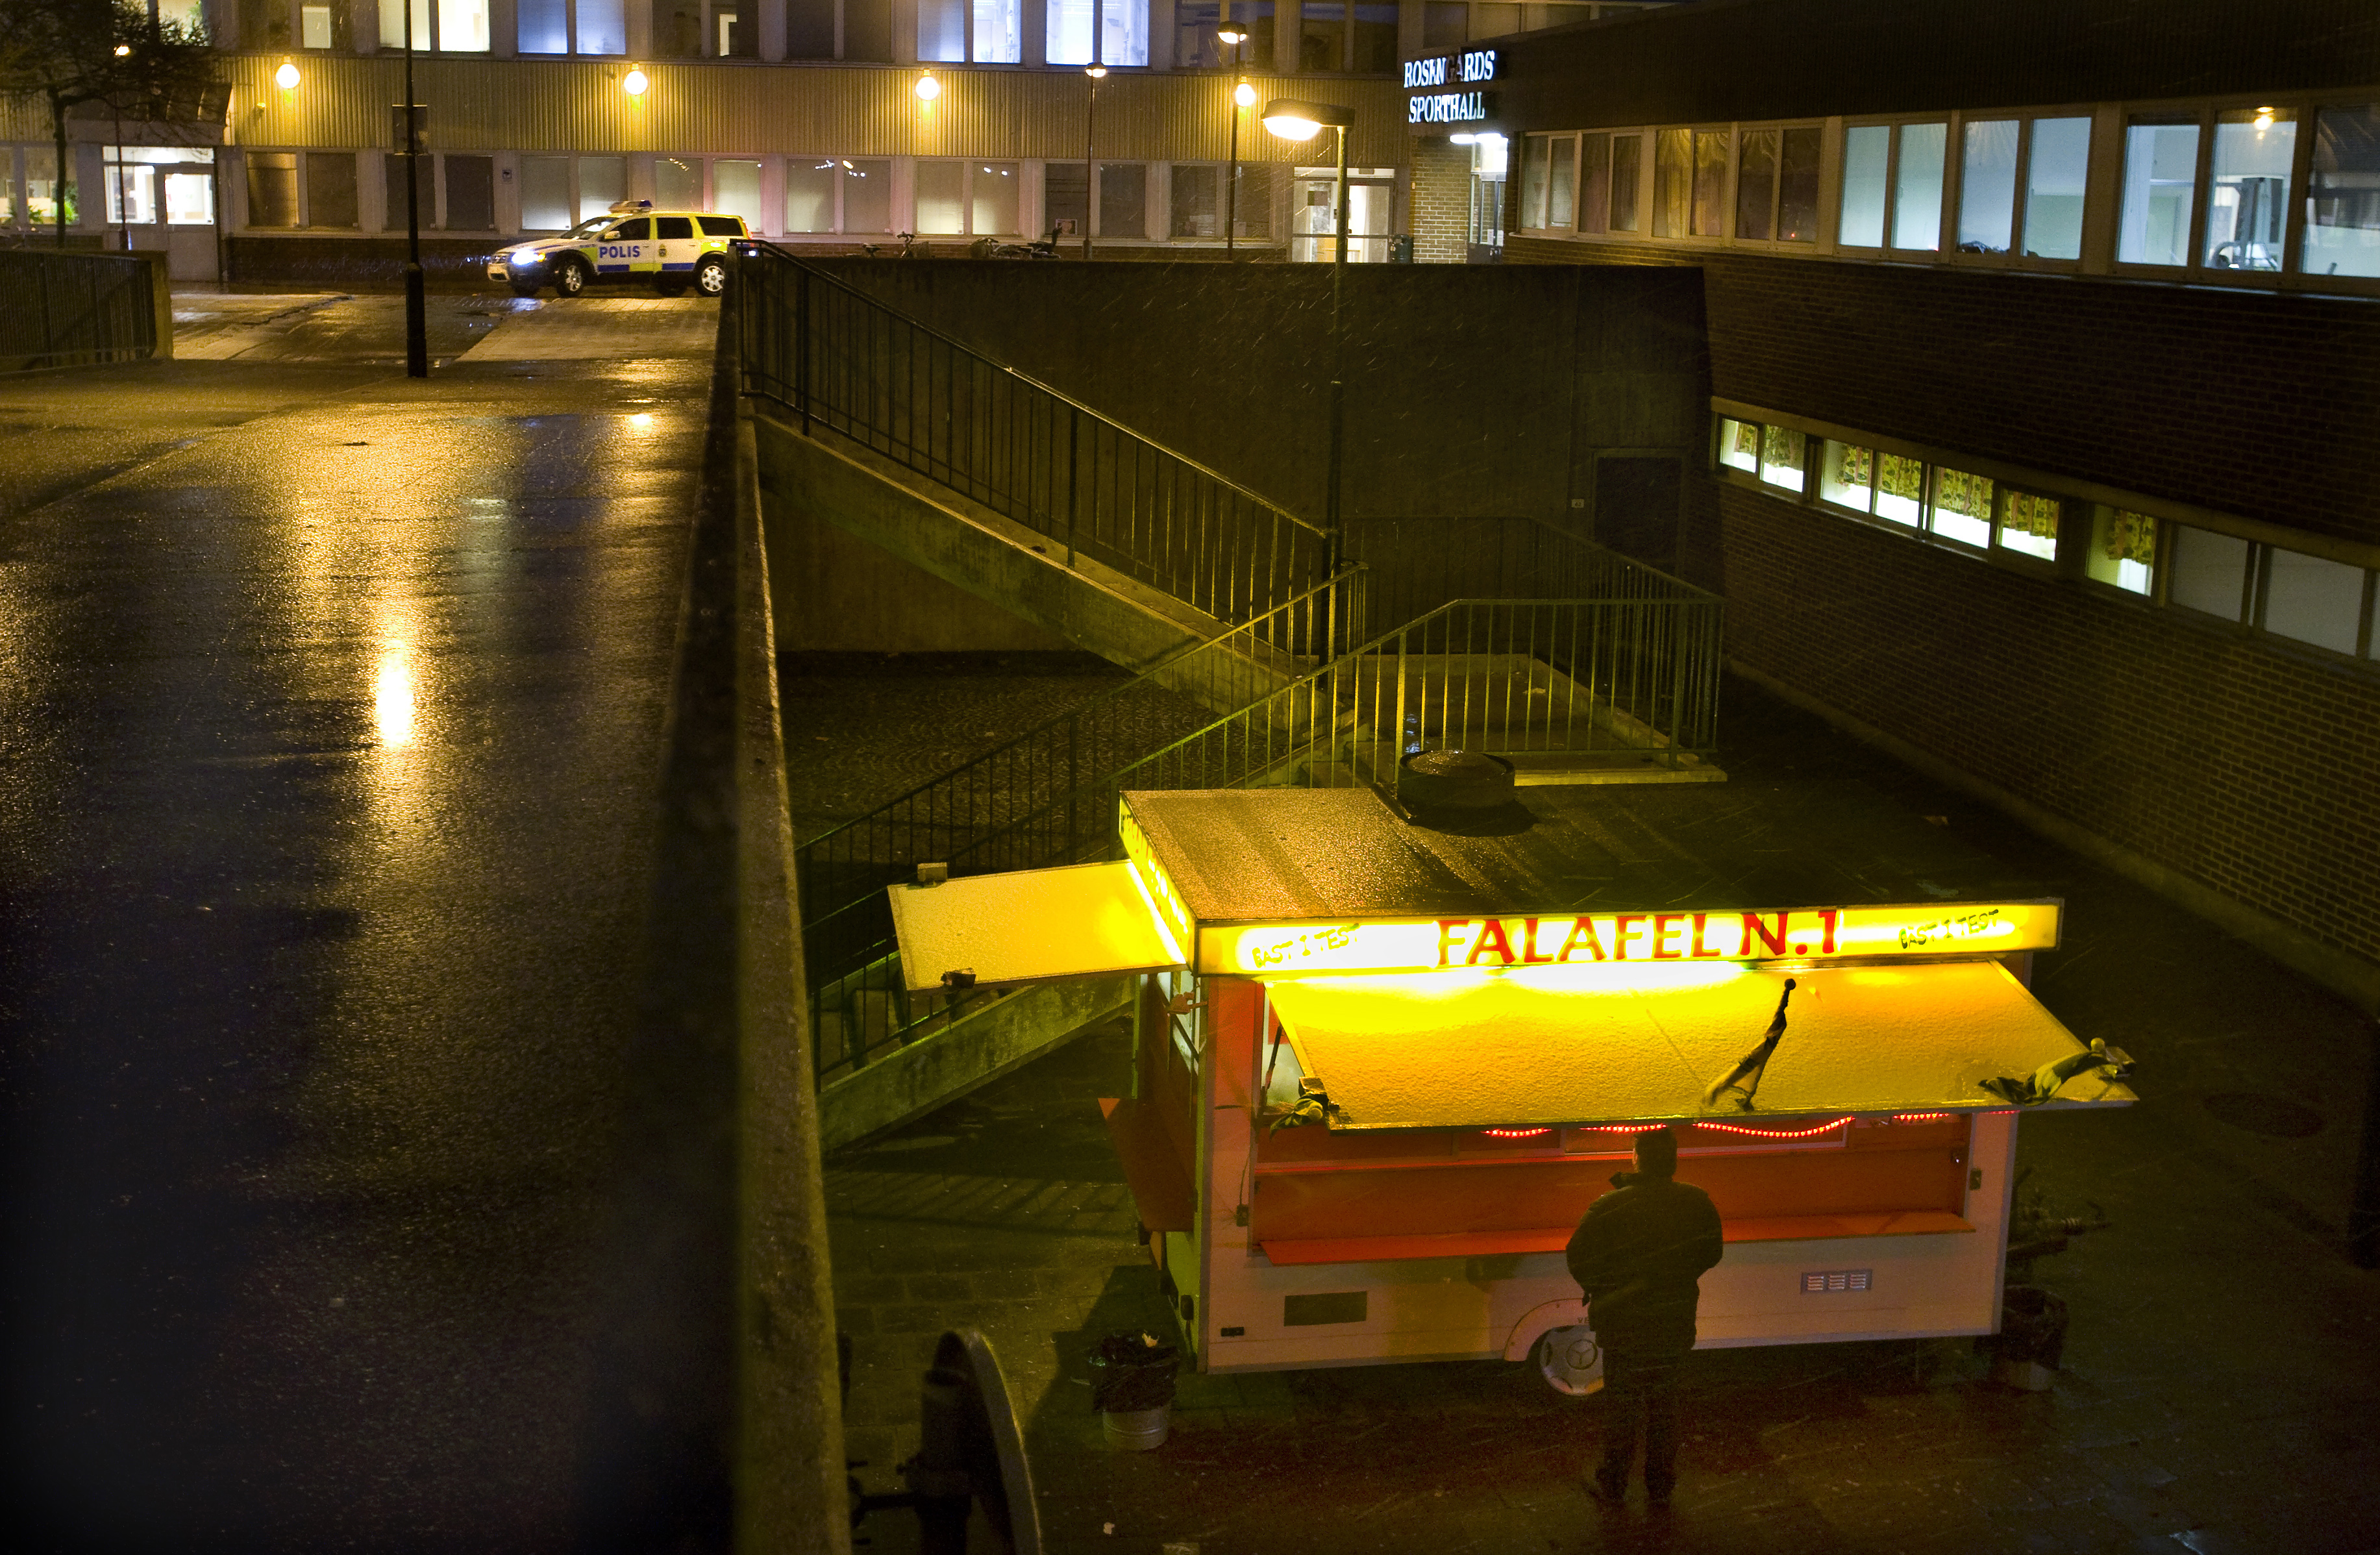 18/1/2010. En falafelvagn i Malmö besköts - av en 11-åring. 
– Jag stod härinne och tittade efter dem. När han riktade pistolen mot mig drog jag in huvudet, sa falafelförsäljaren. 11-åringen kunde gripas tre dagar senare.